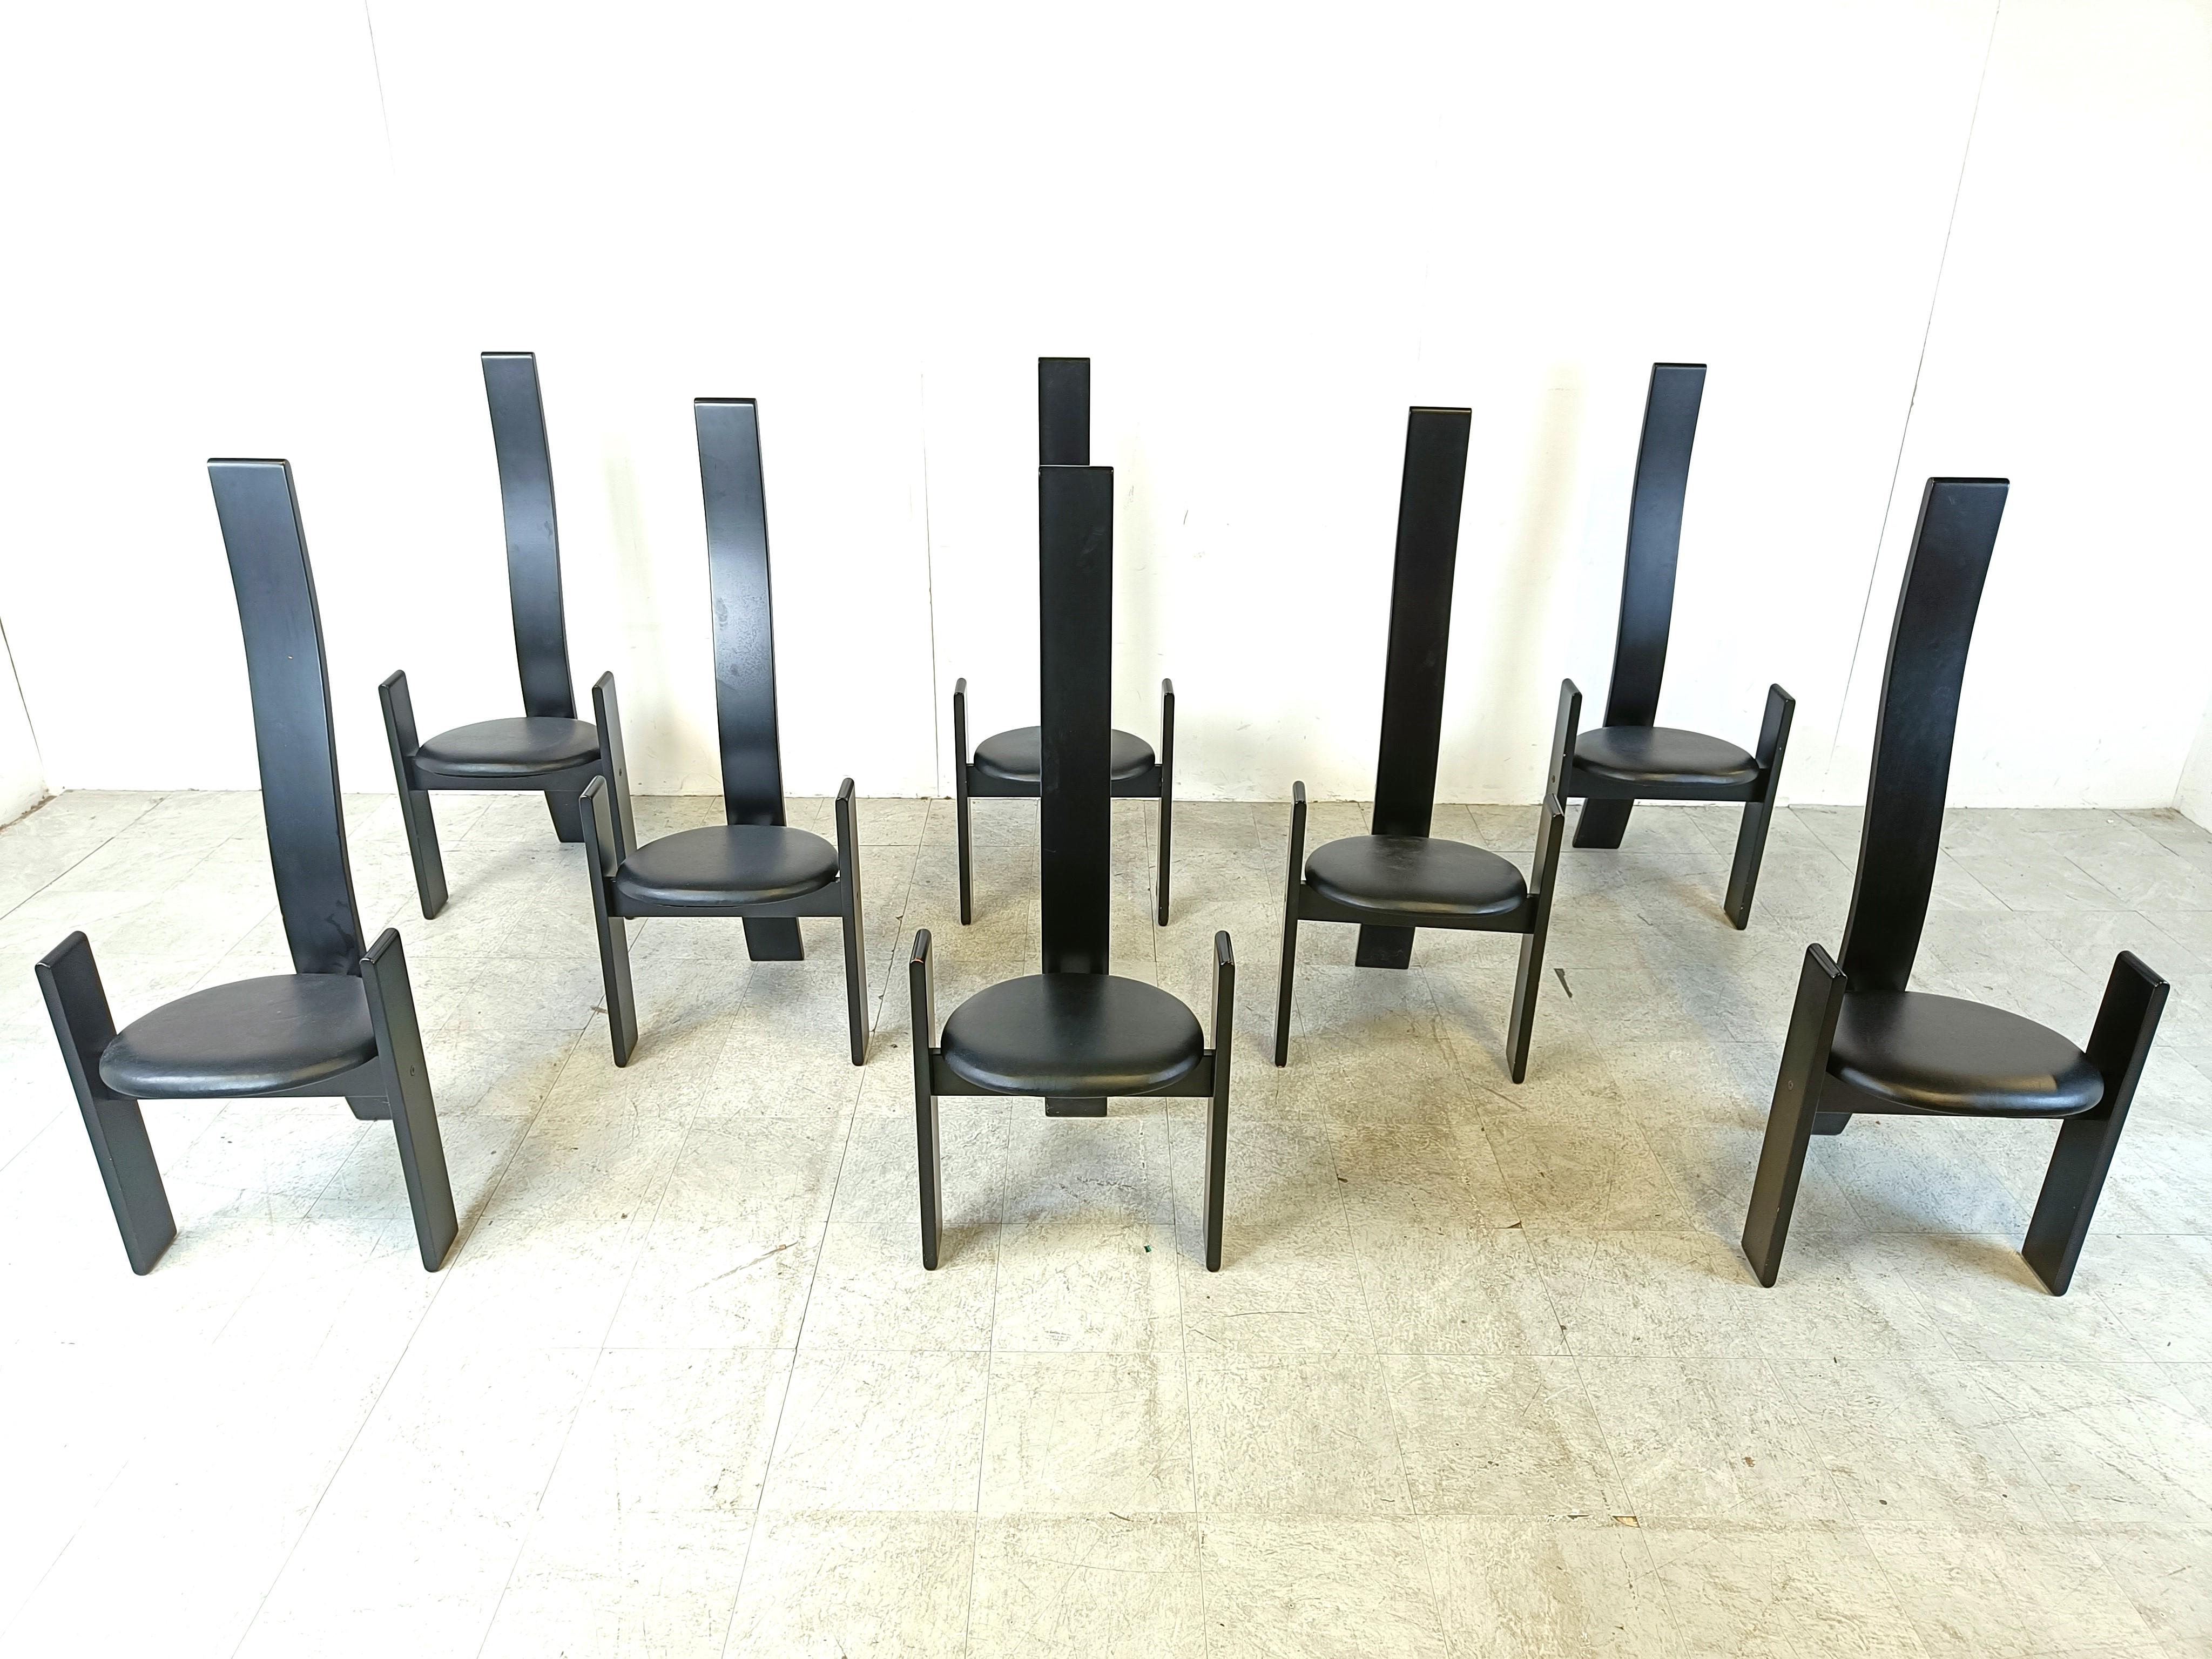 Ensemble de 8 chaises de salle à manger modèle 'Golem' conçu par Vico Magistretti voor Poggi.

Les chaises sont fabriquées en bois laqué noir et recouvertes de skaï noir.

Magnifique design fin et moderne.

Bon état, usure normale liée à l'âge

La